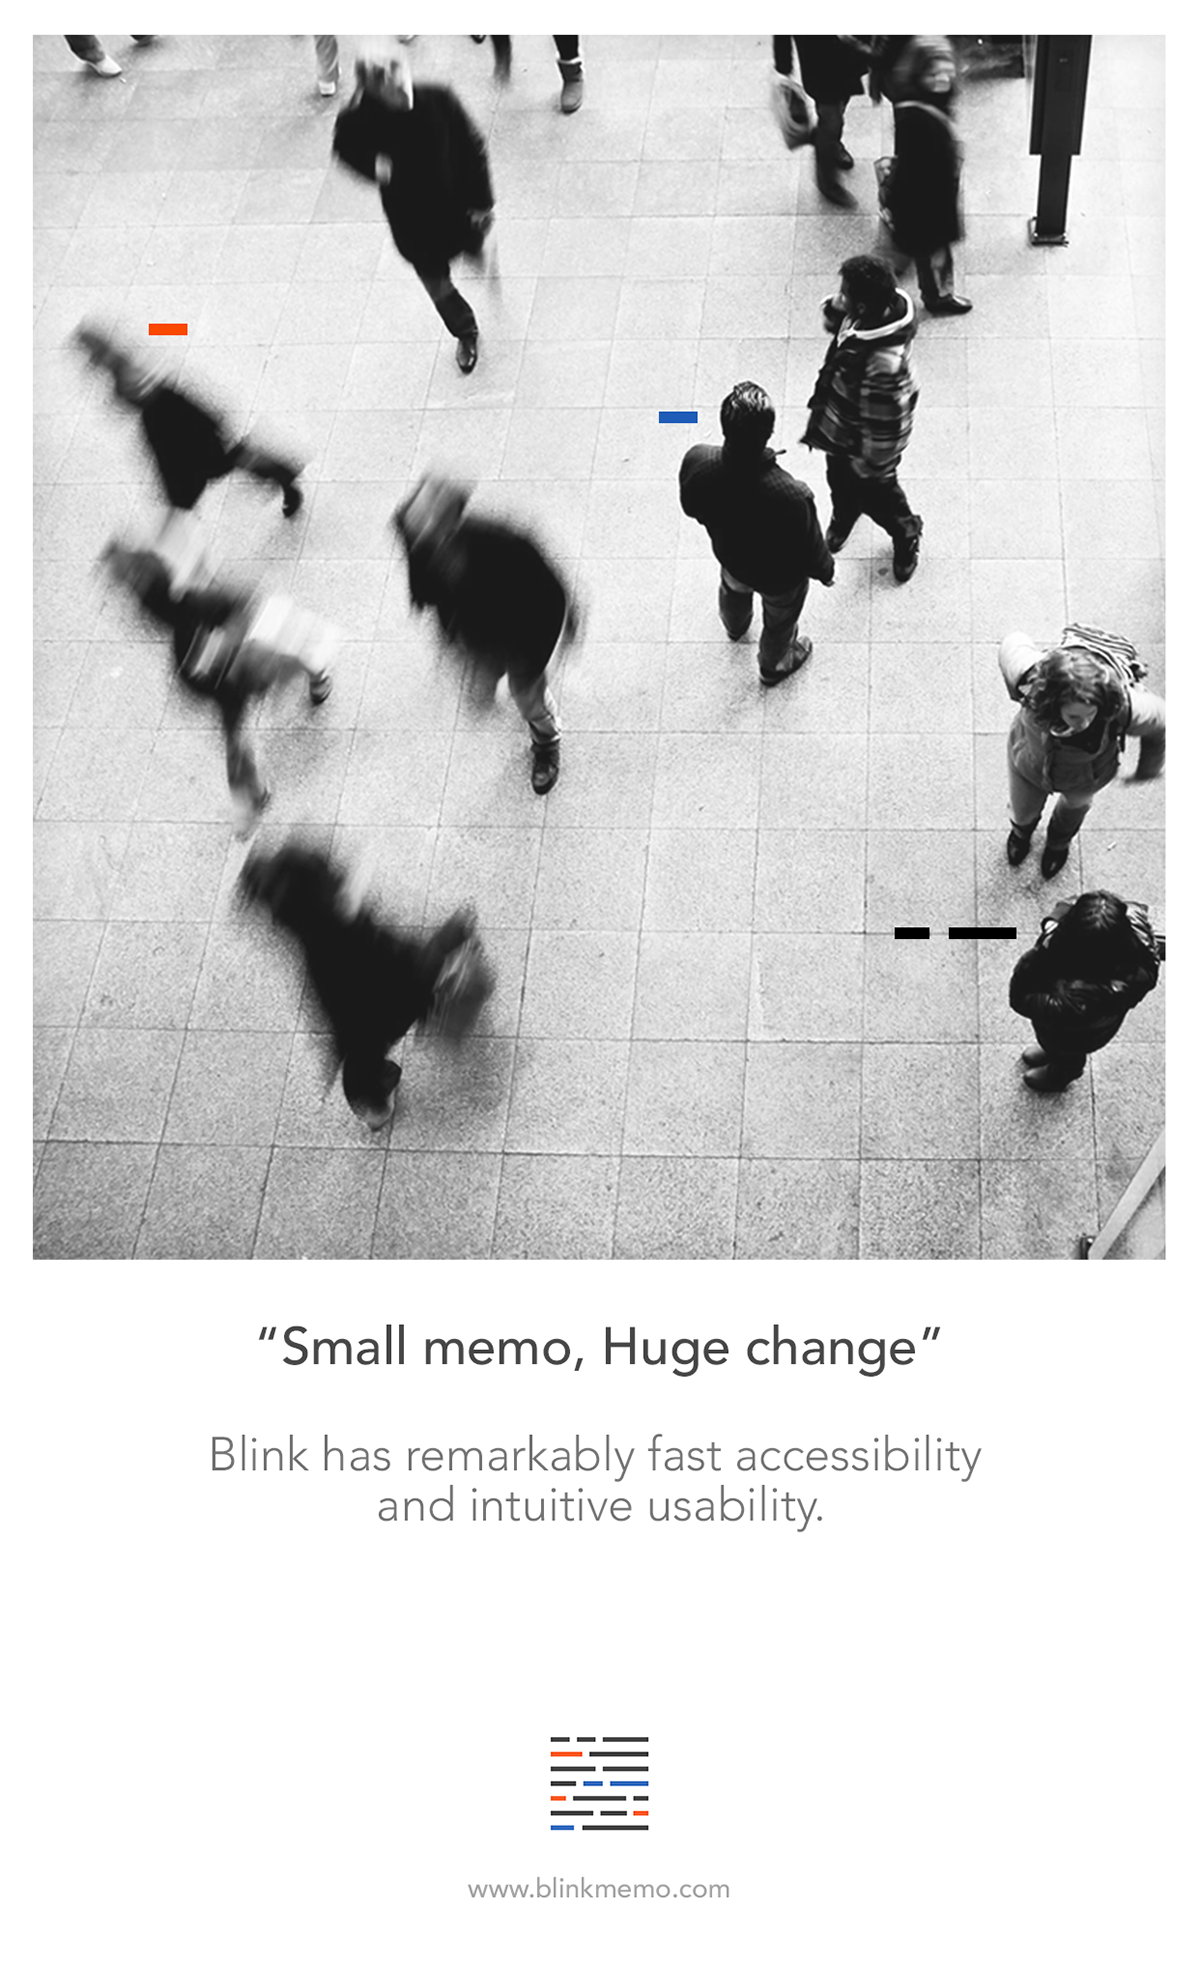 Blink - Quick Memo App (Smart Gesture & Etc) on Behance